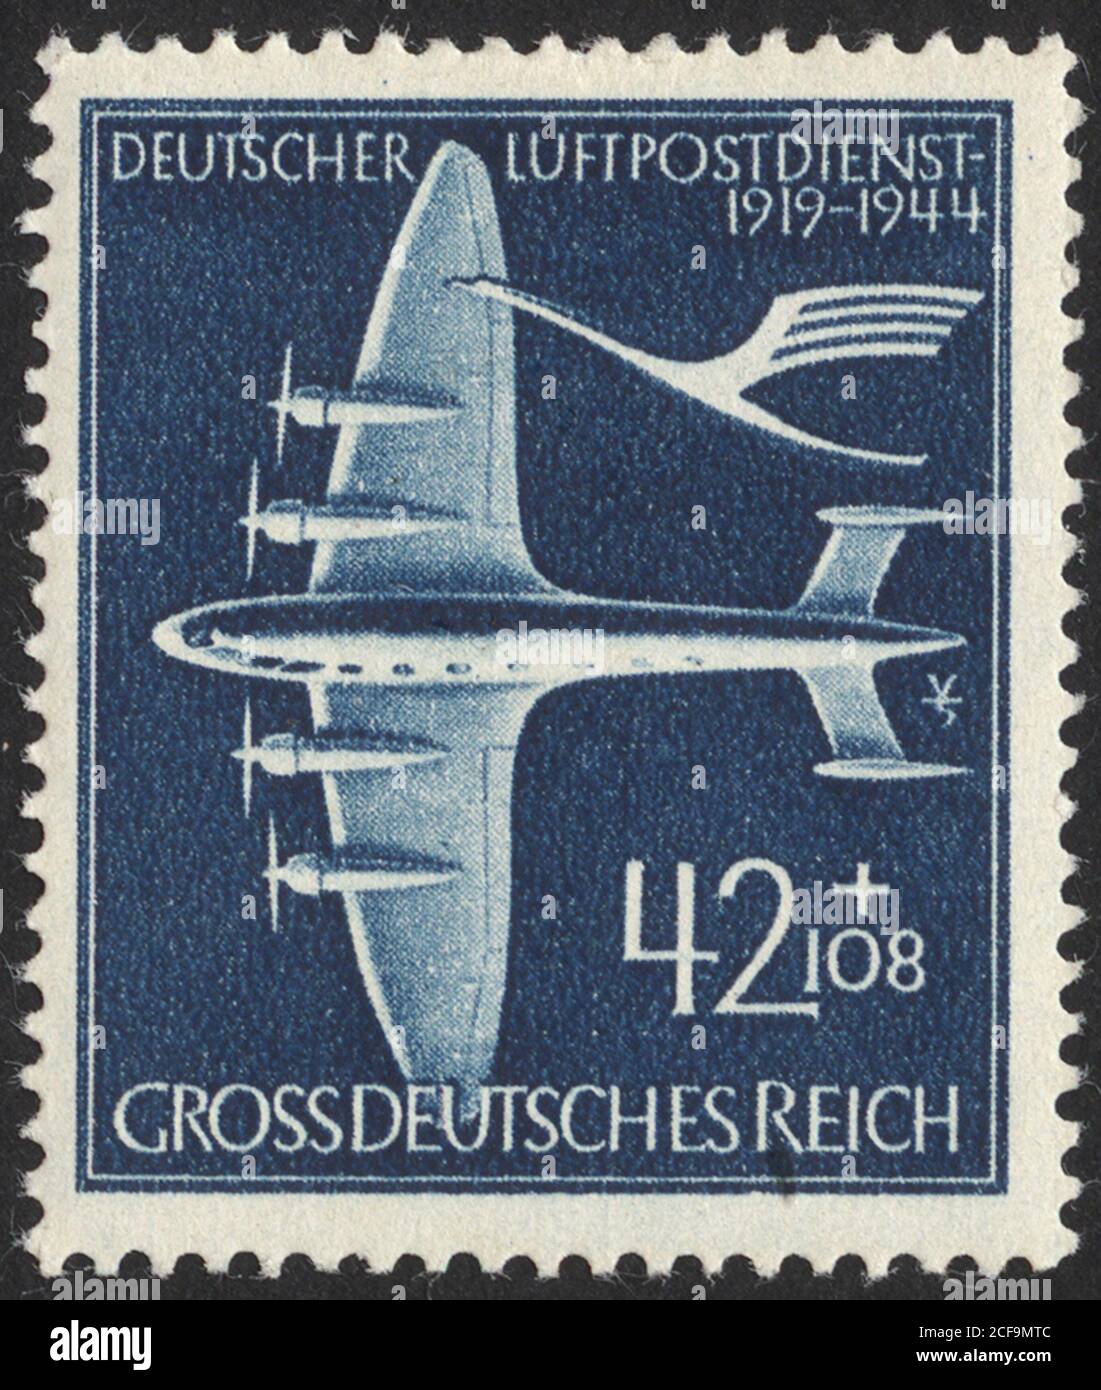 Postage stamps of the Deutsche Demokratische Republik. Stamp printed in the Deutsche Demokratische Republik. Stock Photo